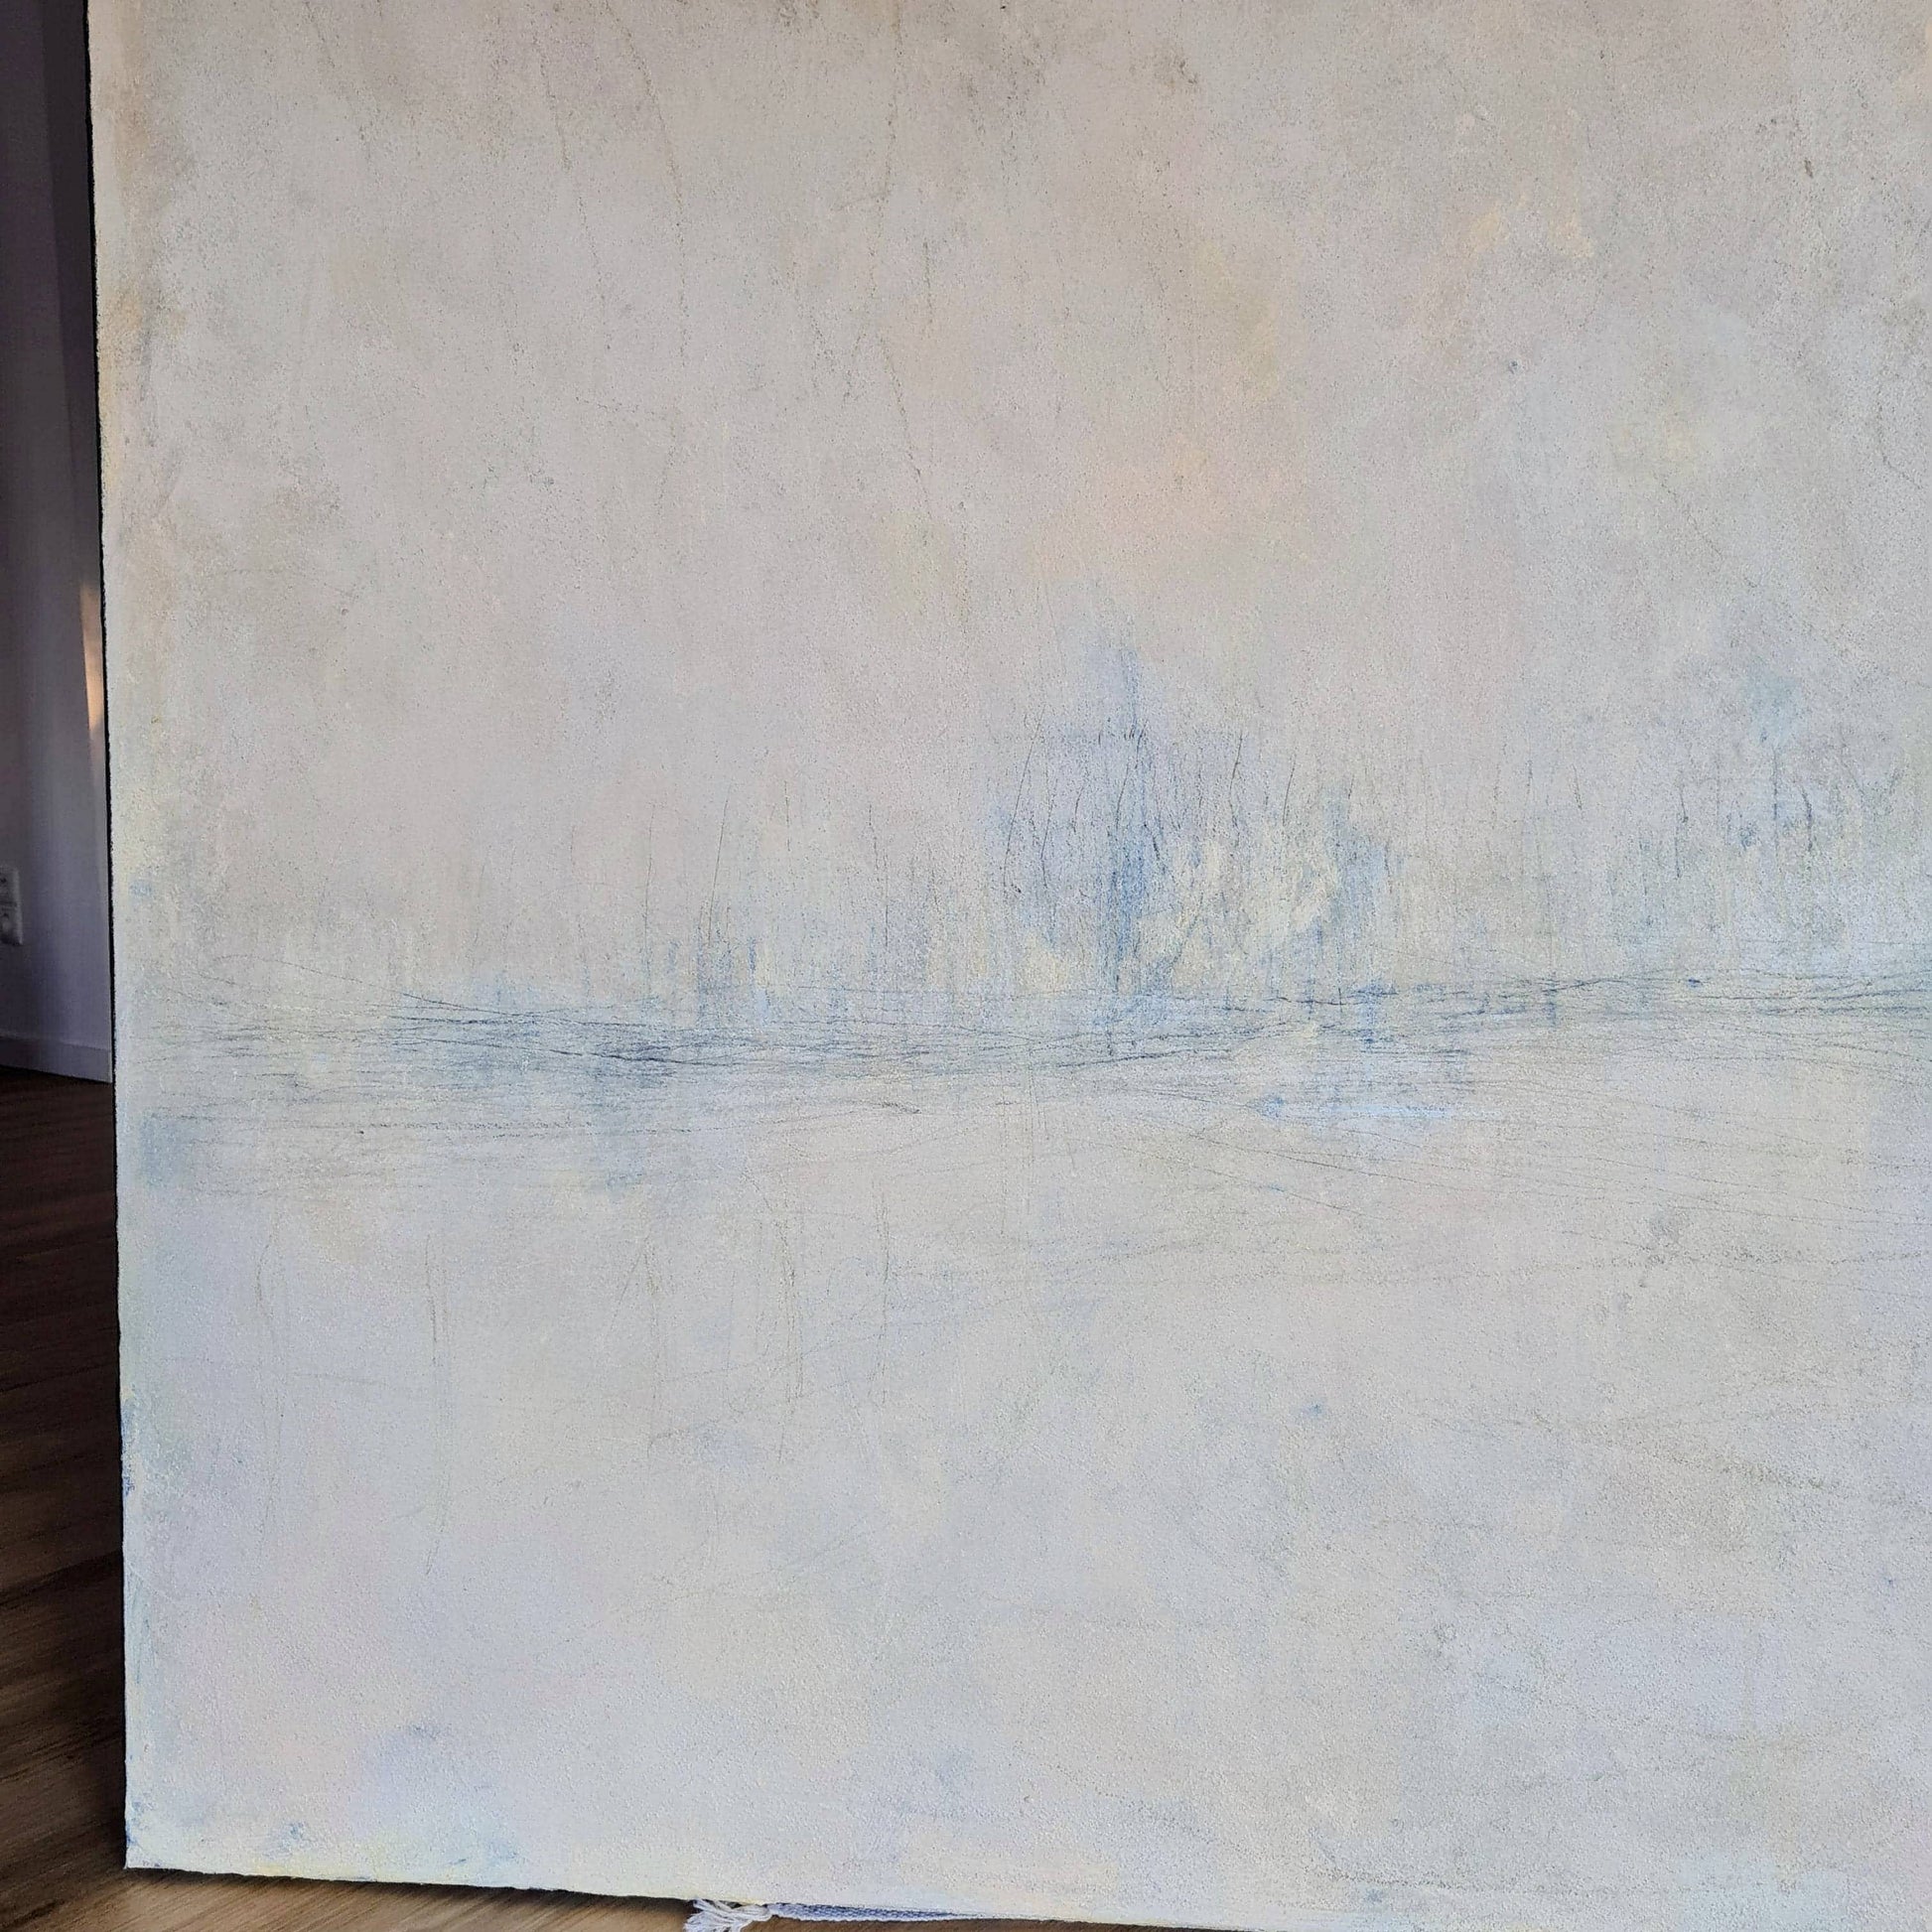 Bild in weiß und beige - Ein individuelles Kunstwerk für Ihre Wand "Meeresrauschen" Abstrakte Bilder & moderne Auftragsmalerei, abstrakte große bilder online kaufen, Auftrags Malere